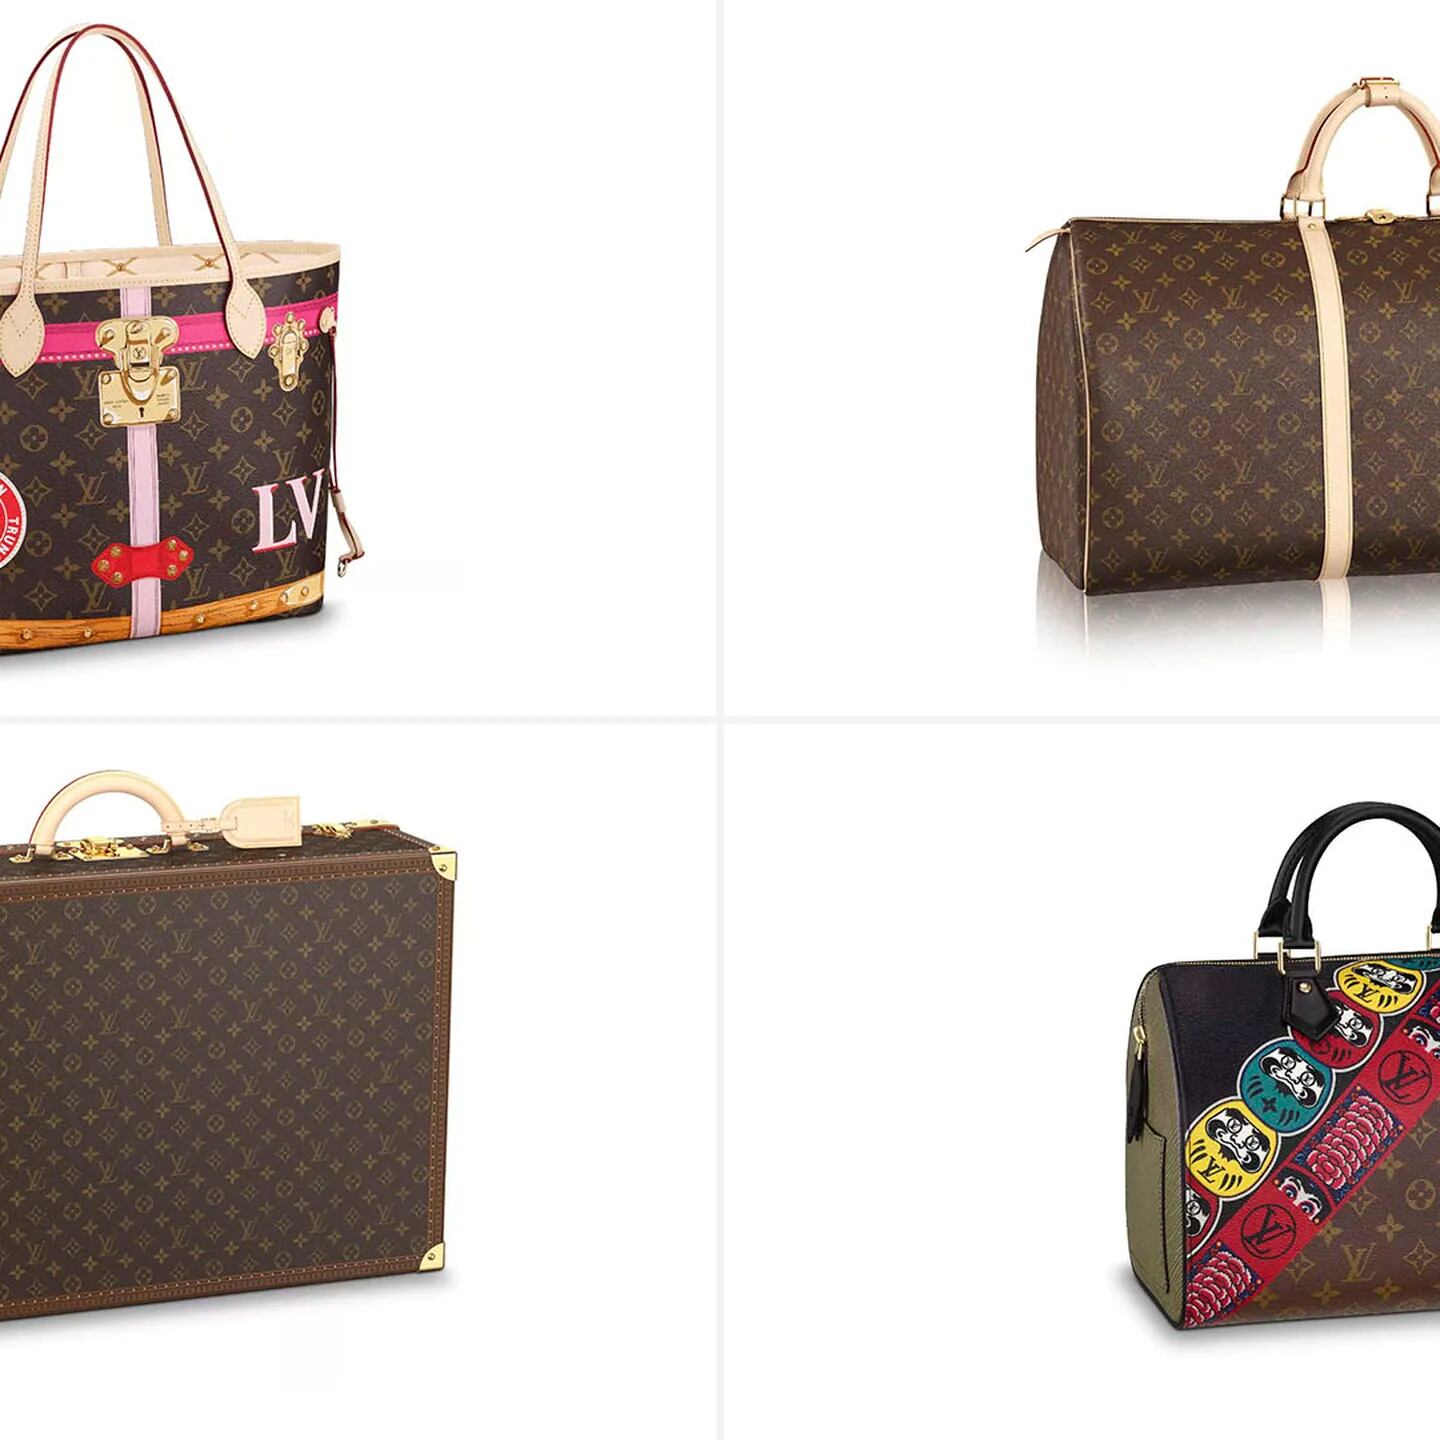 Los 5 bolsos más icónicos de Louis Vuitton y su historia